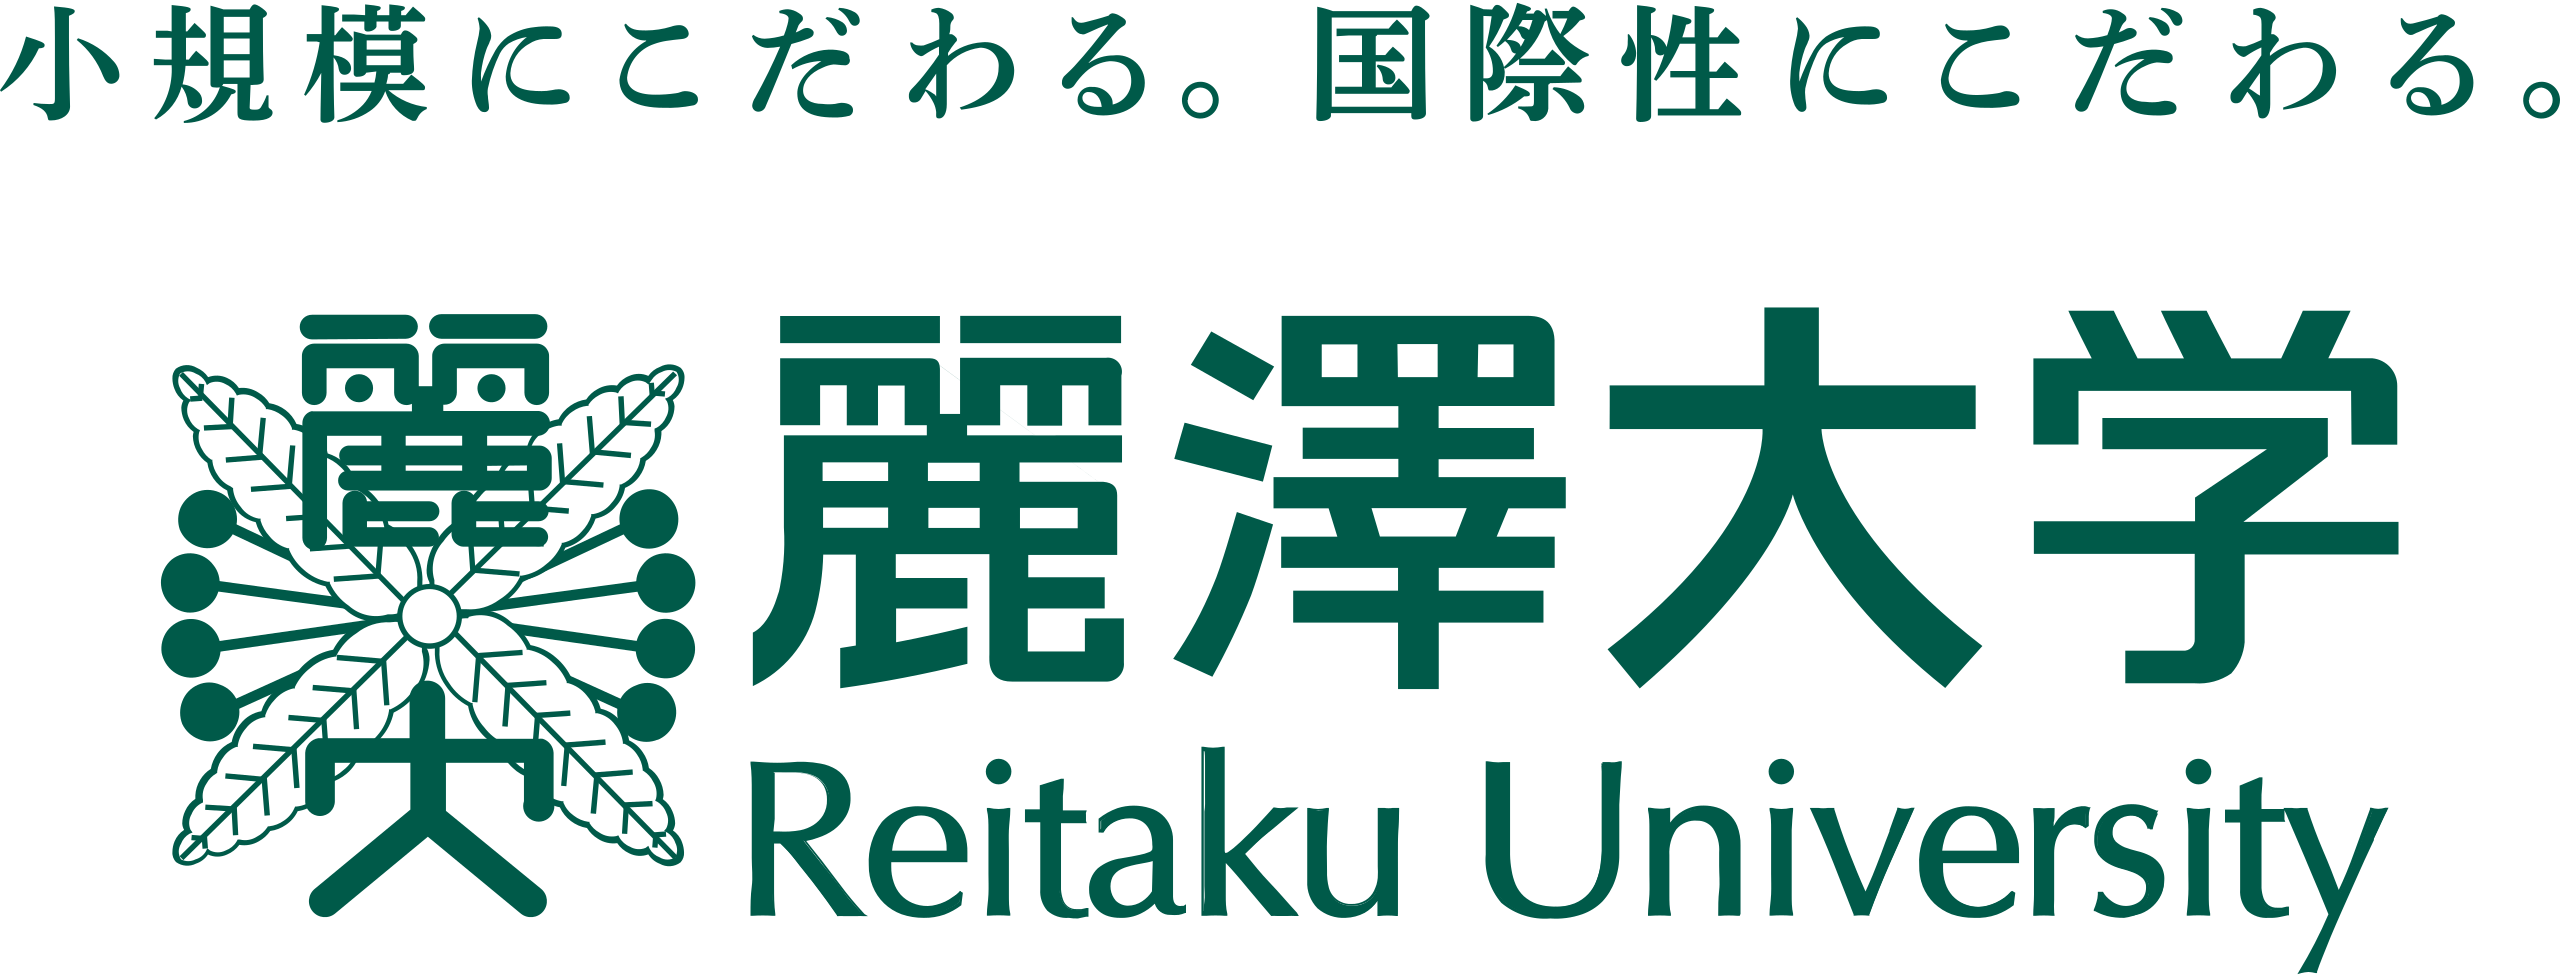 Reitaku University Japan